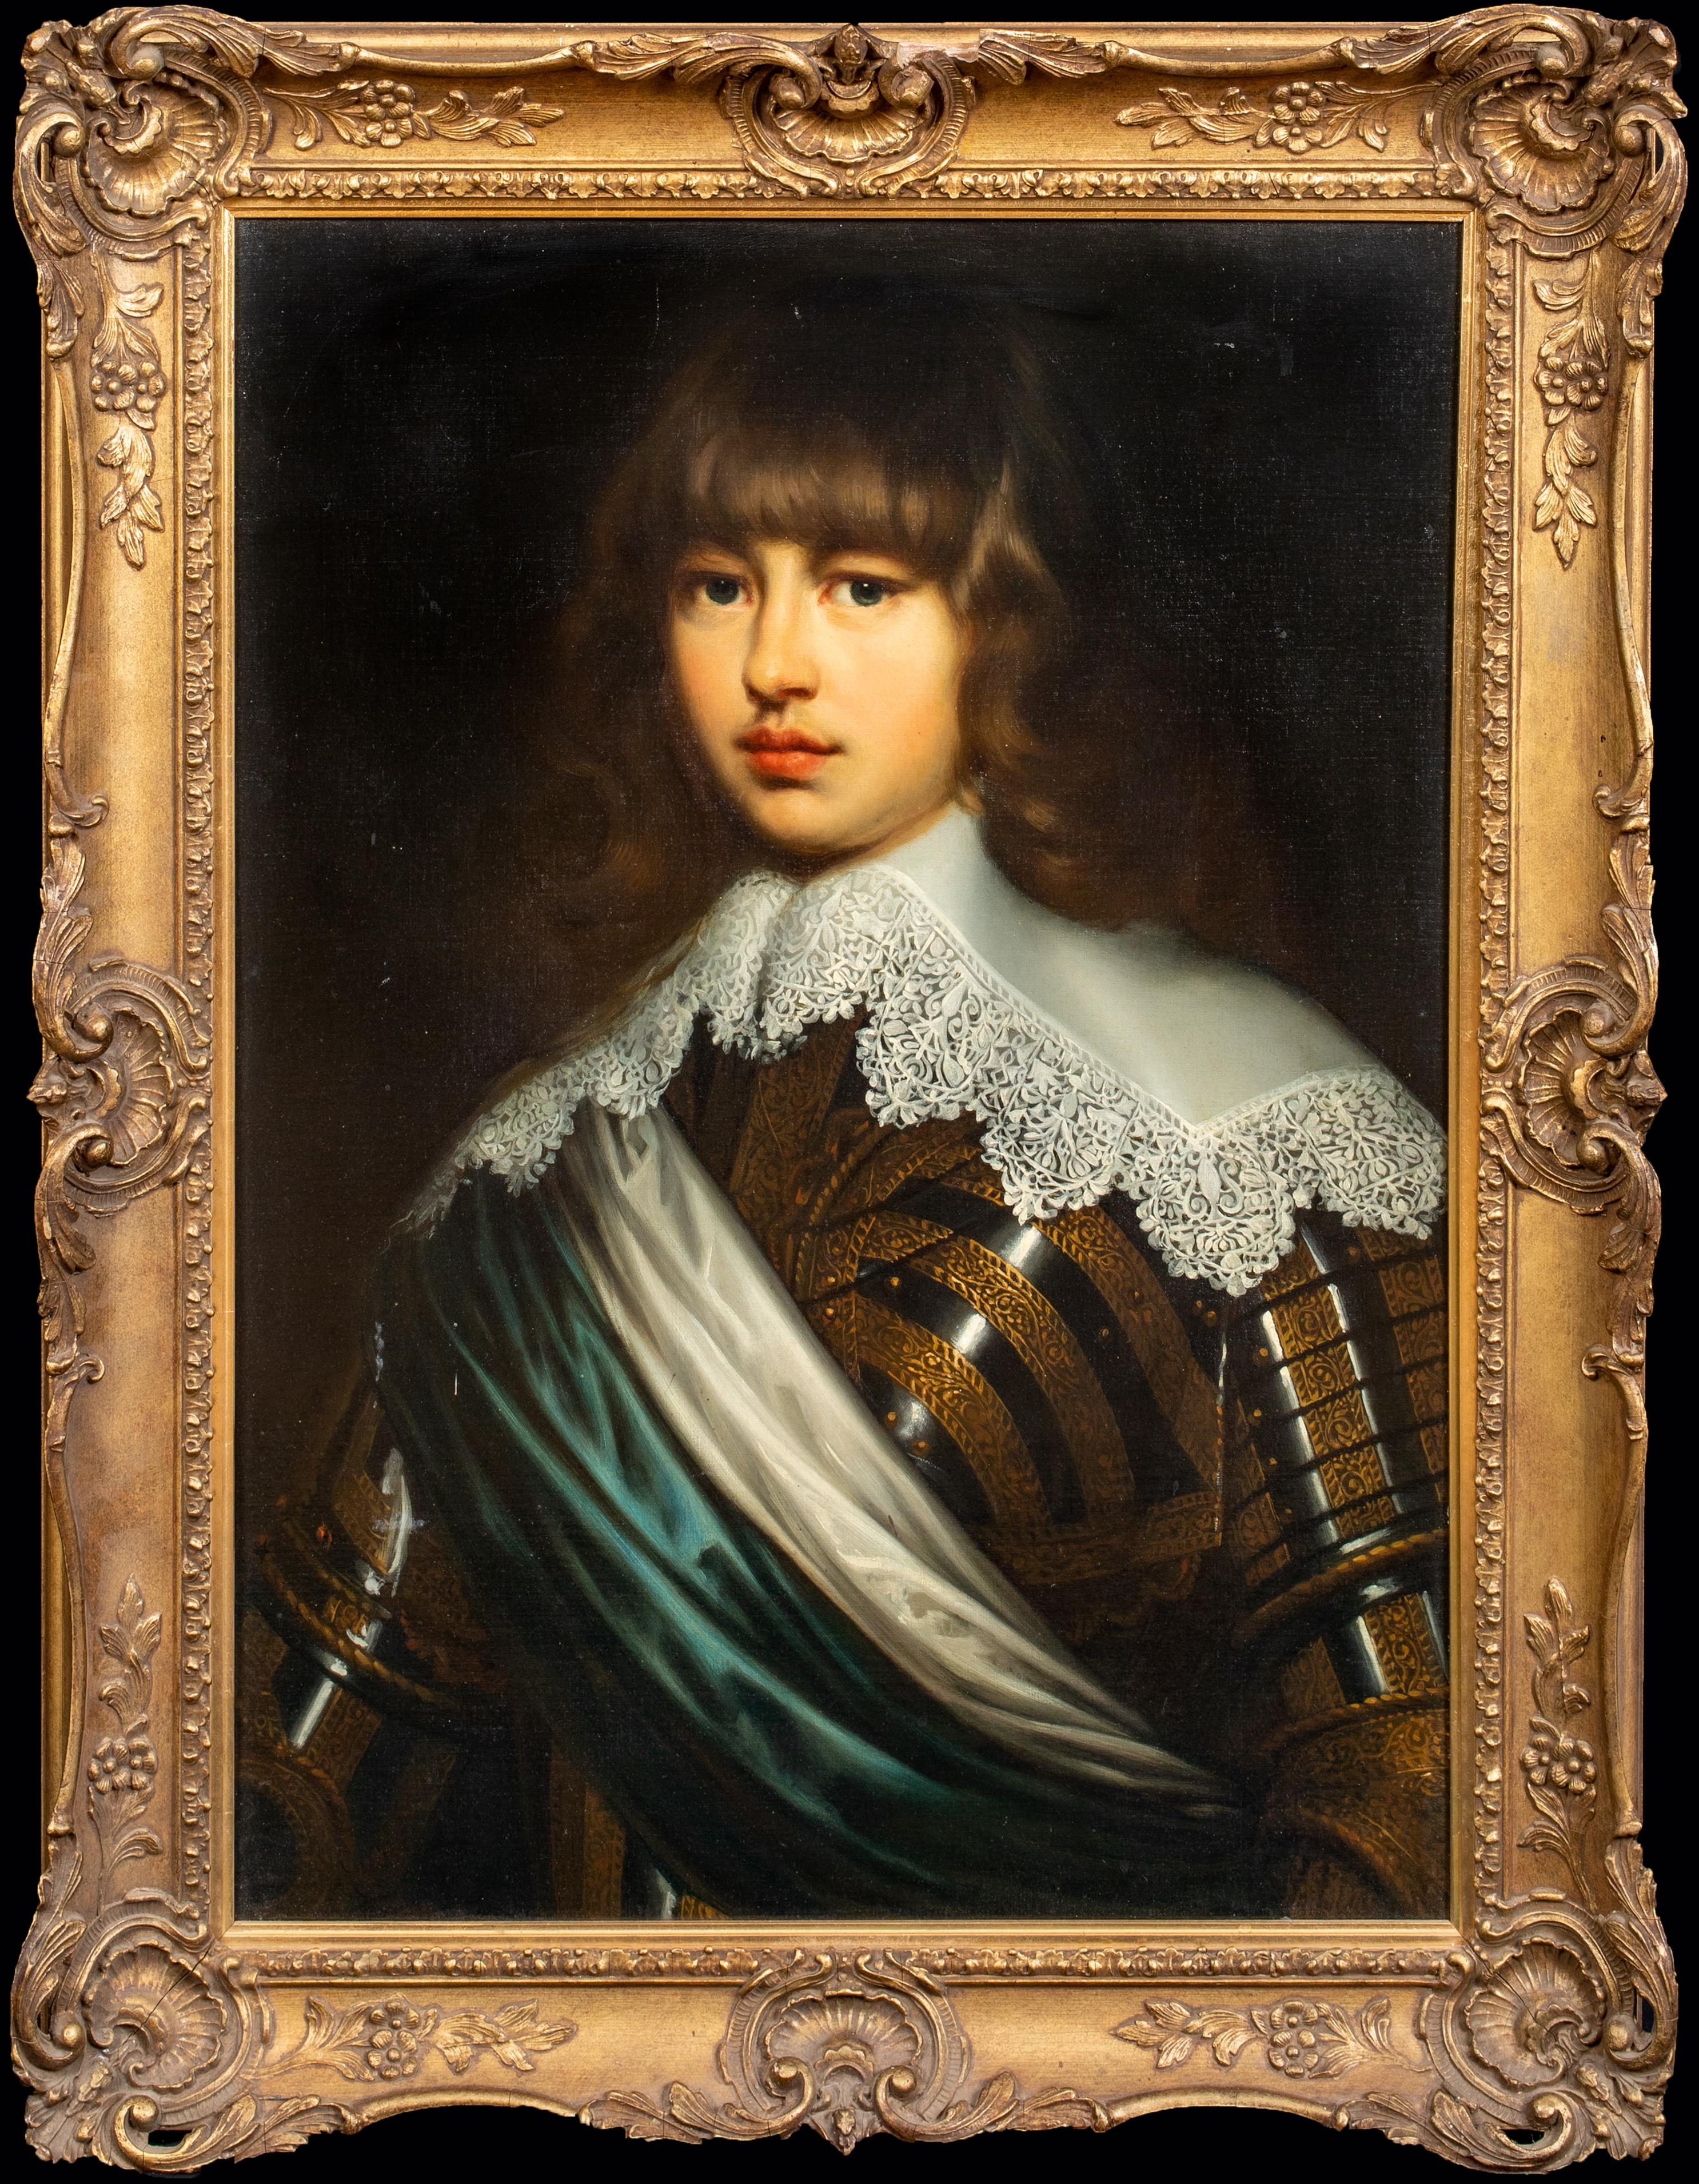 Justus Sustermans Portrait Painting – Porträt von Prinz Valdemar Christian aus Schleswig-Holstein, Dänemark 1622-1656